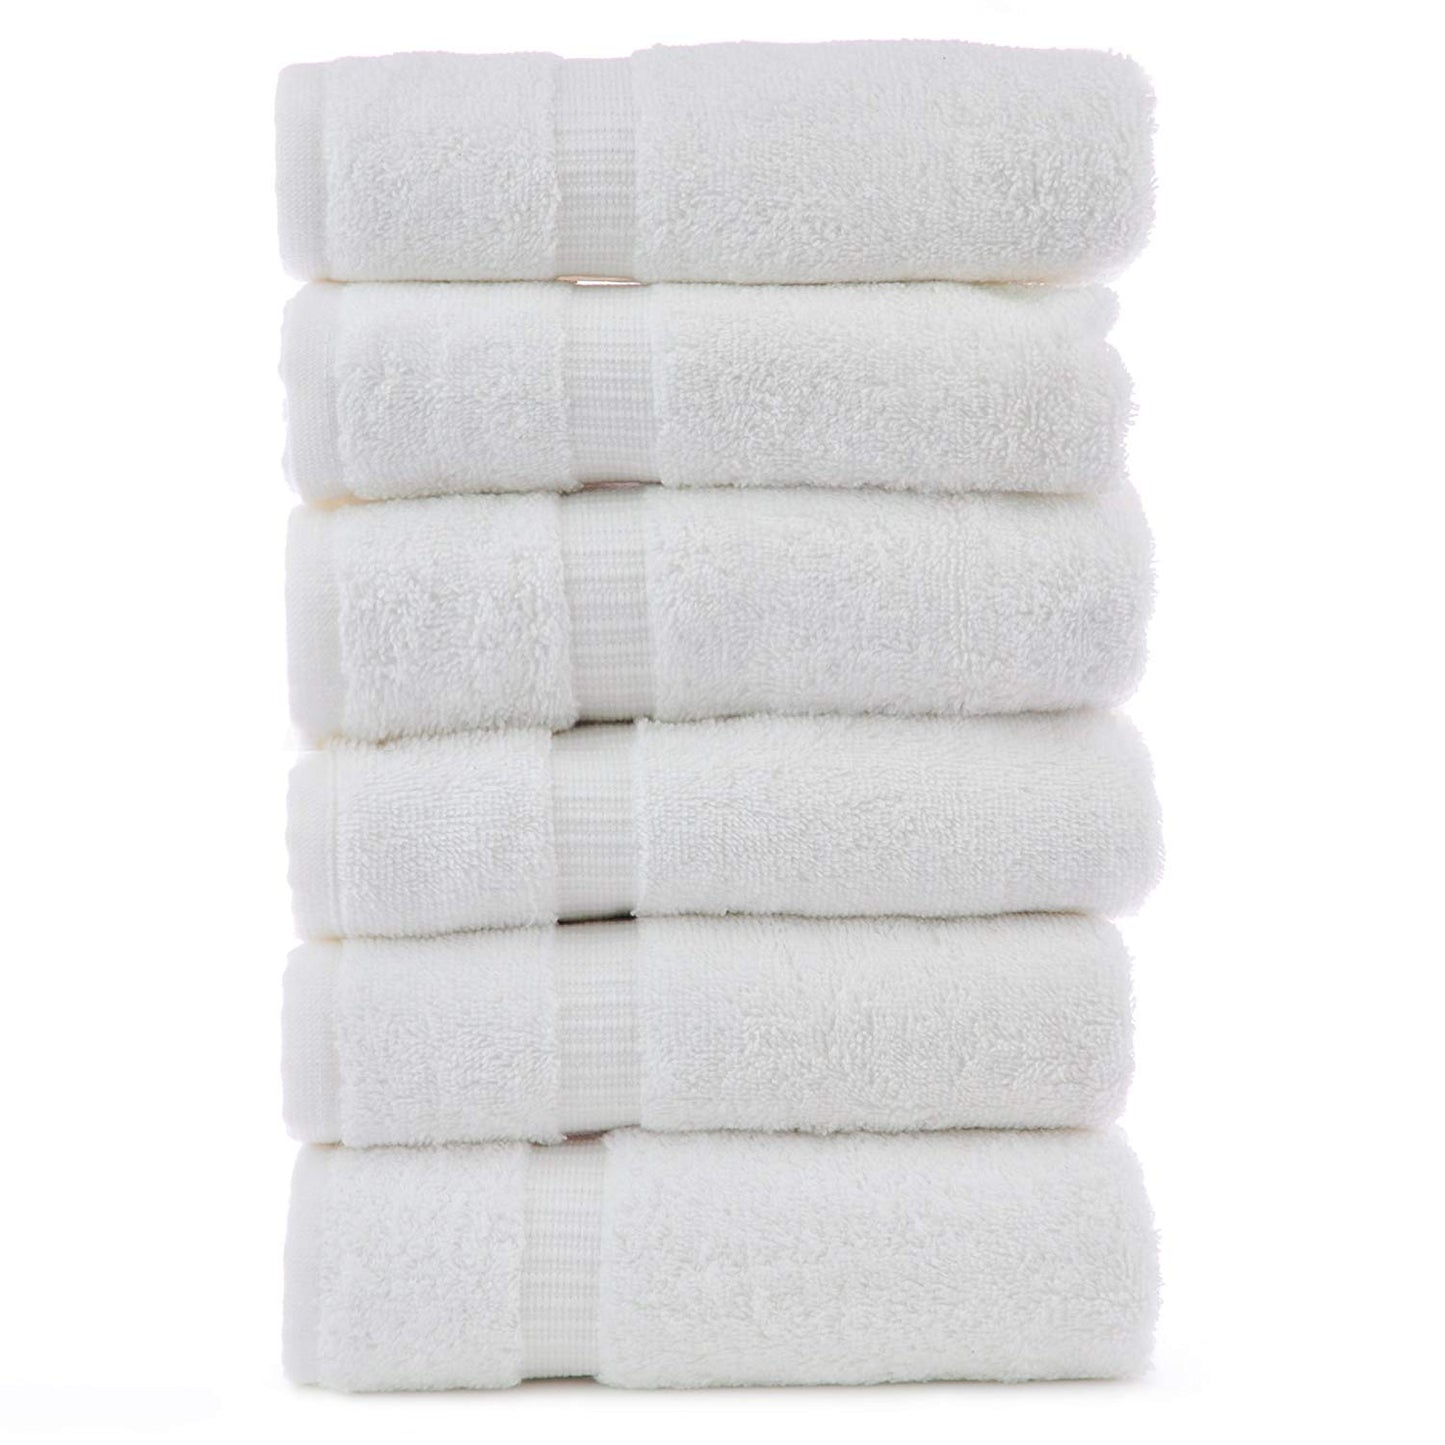 Premium White Spa Towel 35" x 65" - SpaSupply